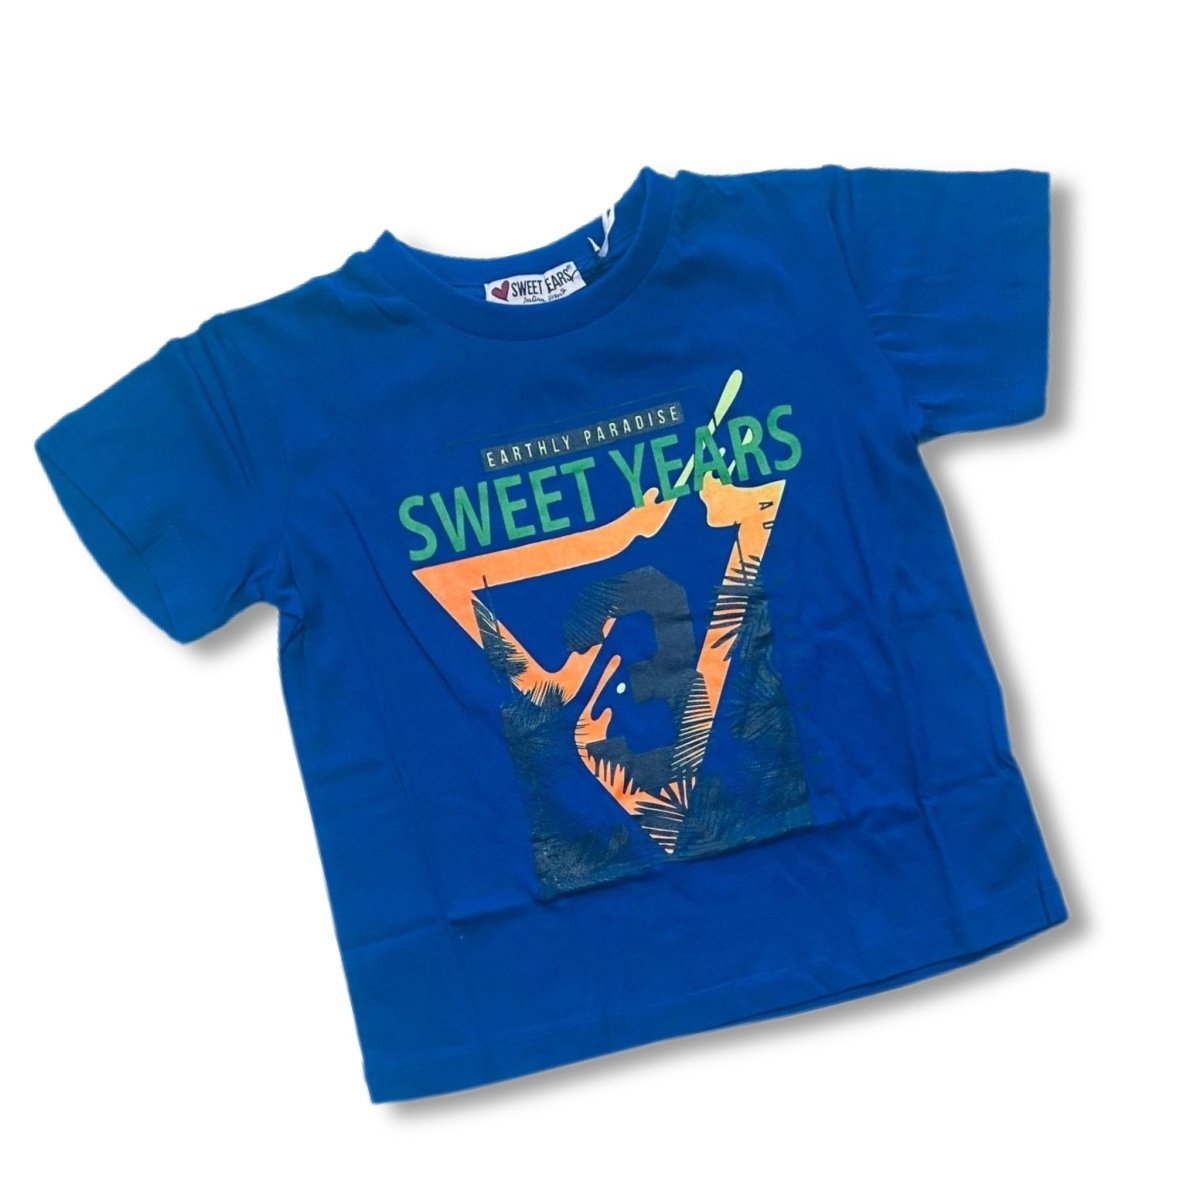 T-shirt Sweet Years 8/14 anni Bimbo - Mstore016 - T-shirt Sweet Years - Sweet Years